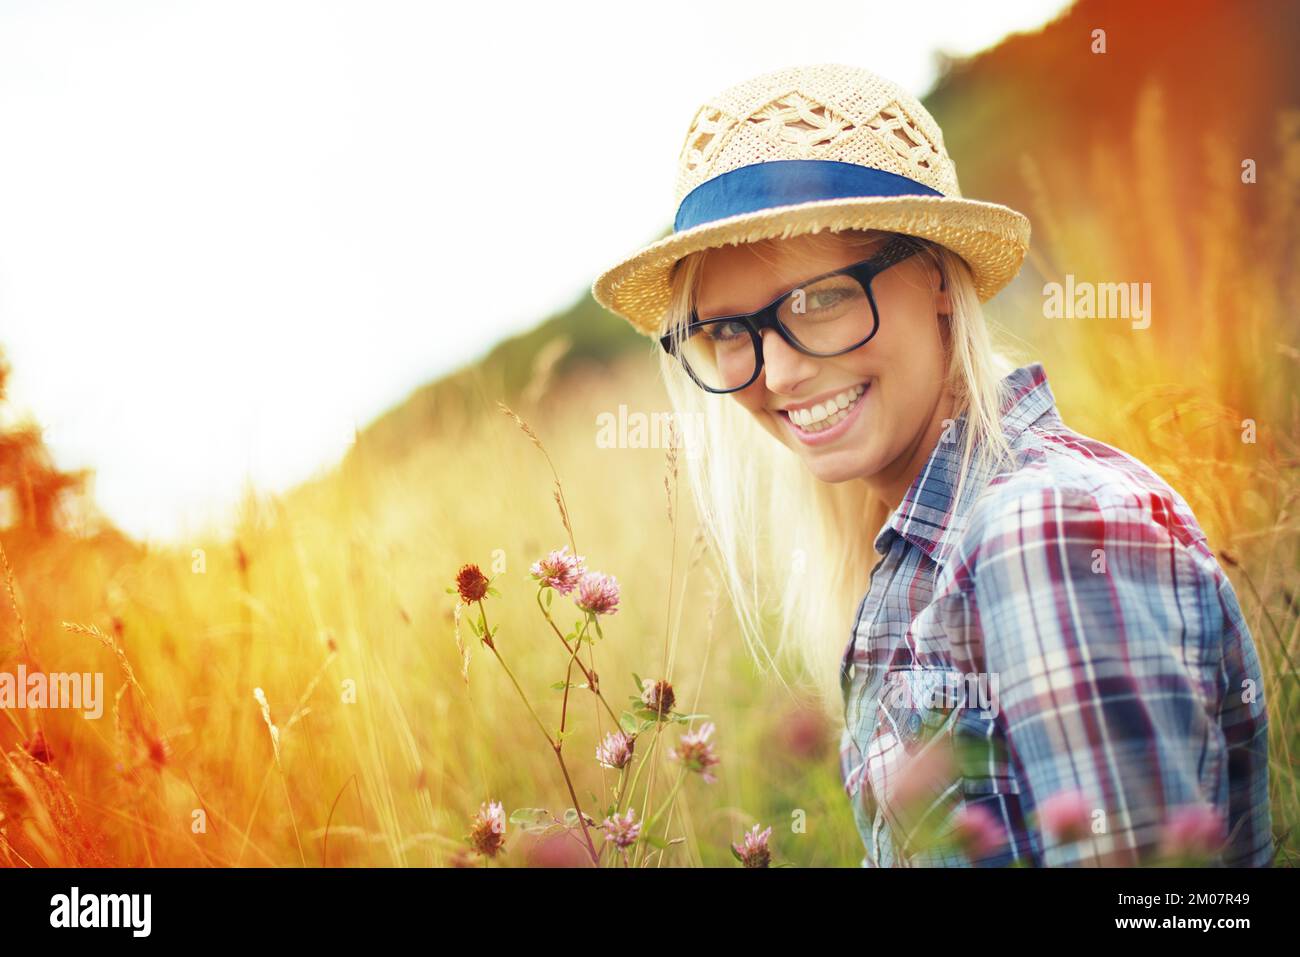 Das ist ihr glücklicher Ort. Wunderschöner junger Hipster auf einem Feld - Lomo-Fotografie. Stockfoto